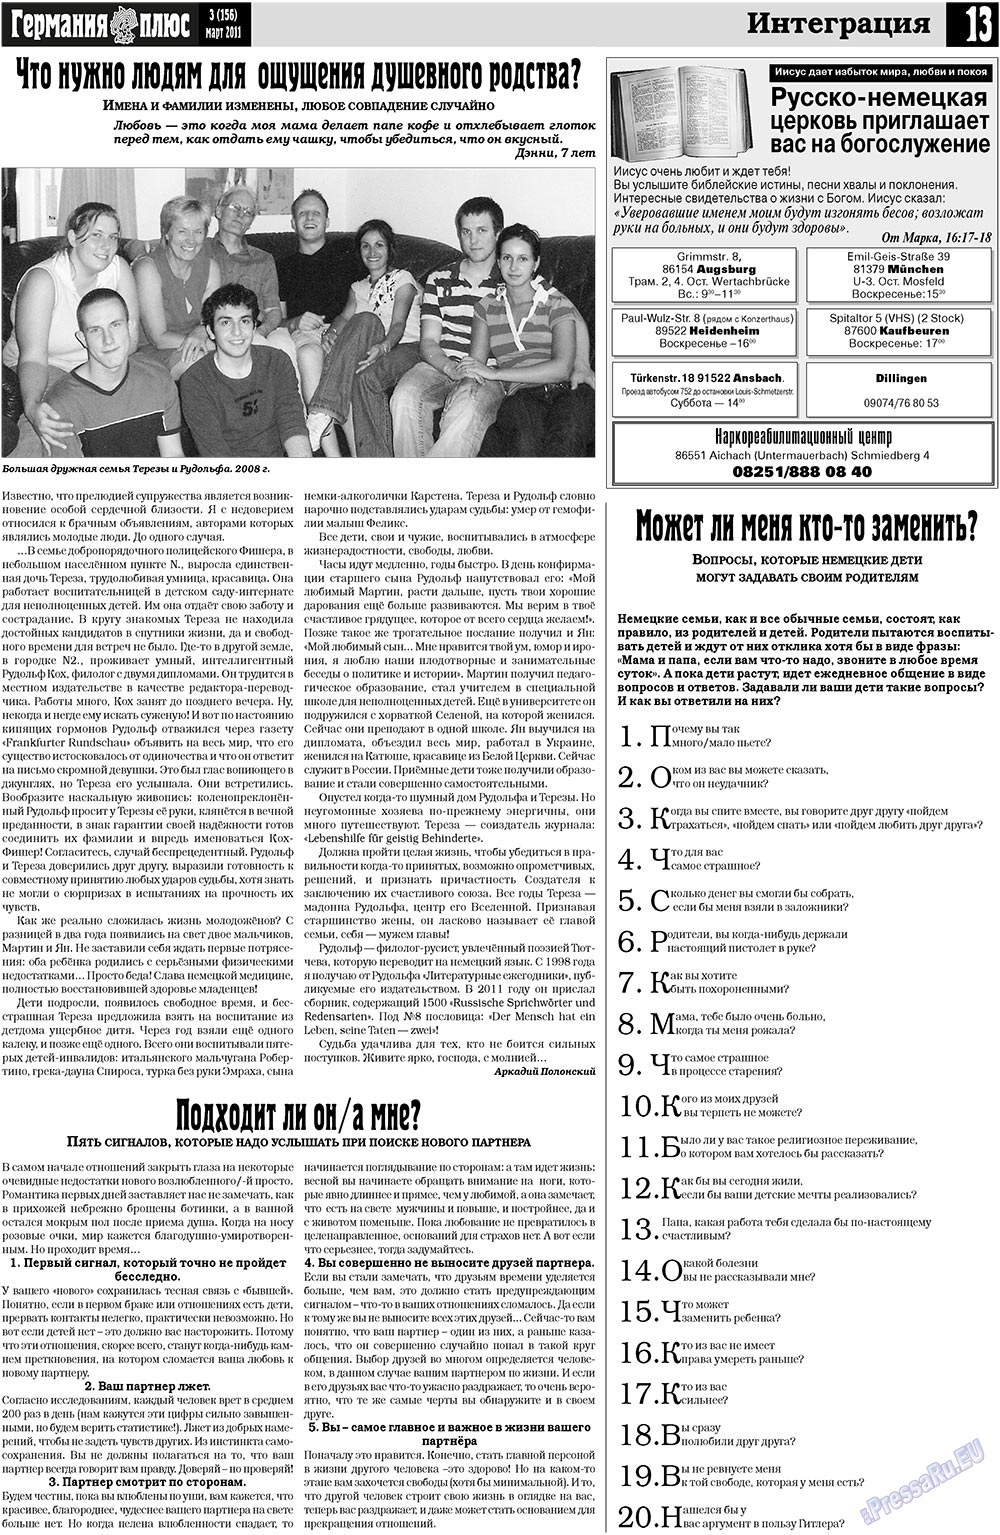 Германия плюс, газета. 2011 №3 стр.13